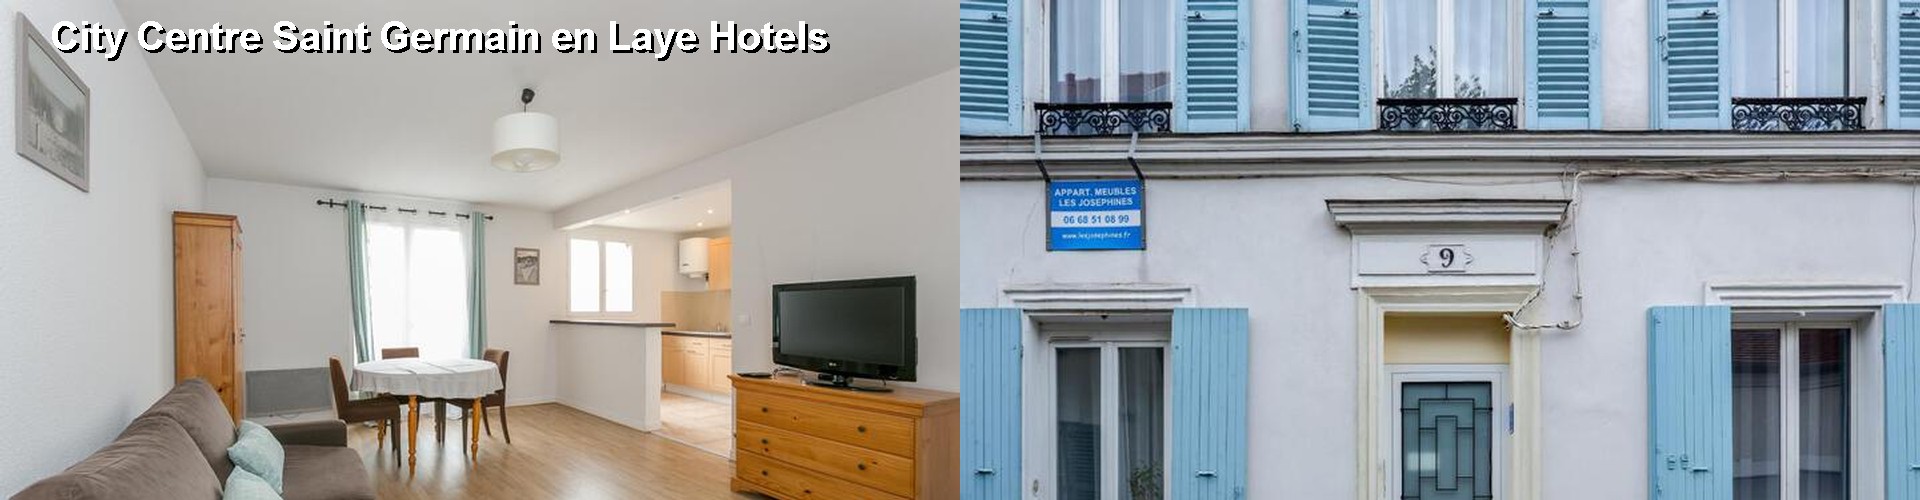 5 Best Hotels near City Centre Saint Germain en Laye